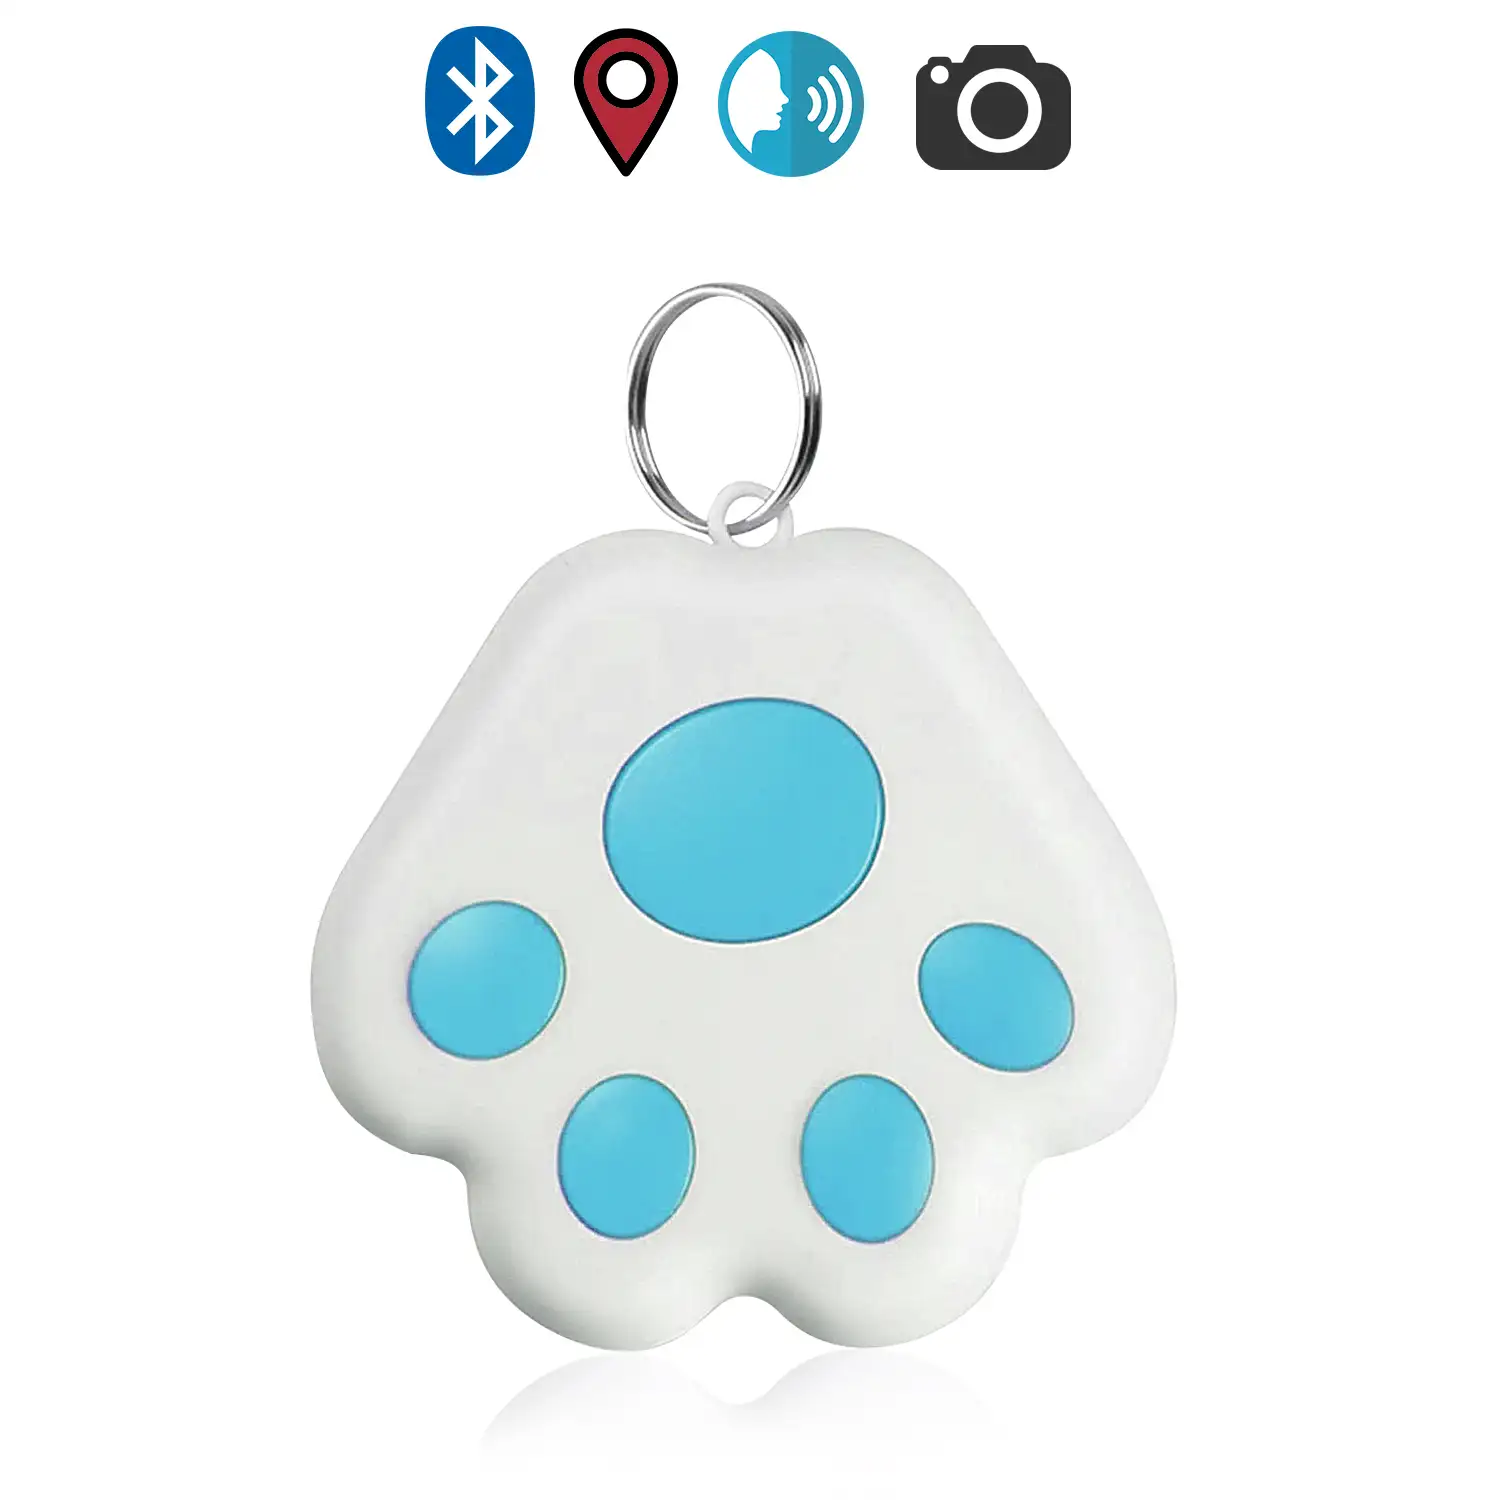 Localizador PAW Bluetooth 4.0 multifunción, con indicador GPS de última localización. Para mascotas, llaves, maletas, etc.